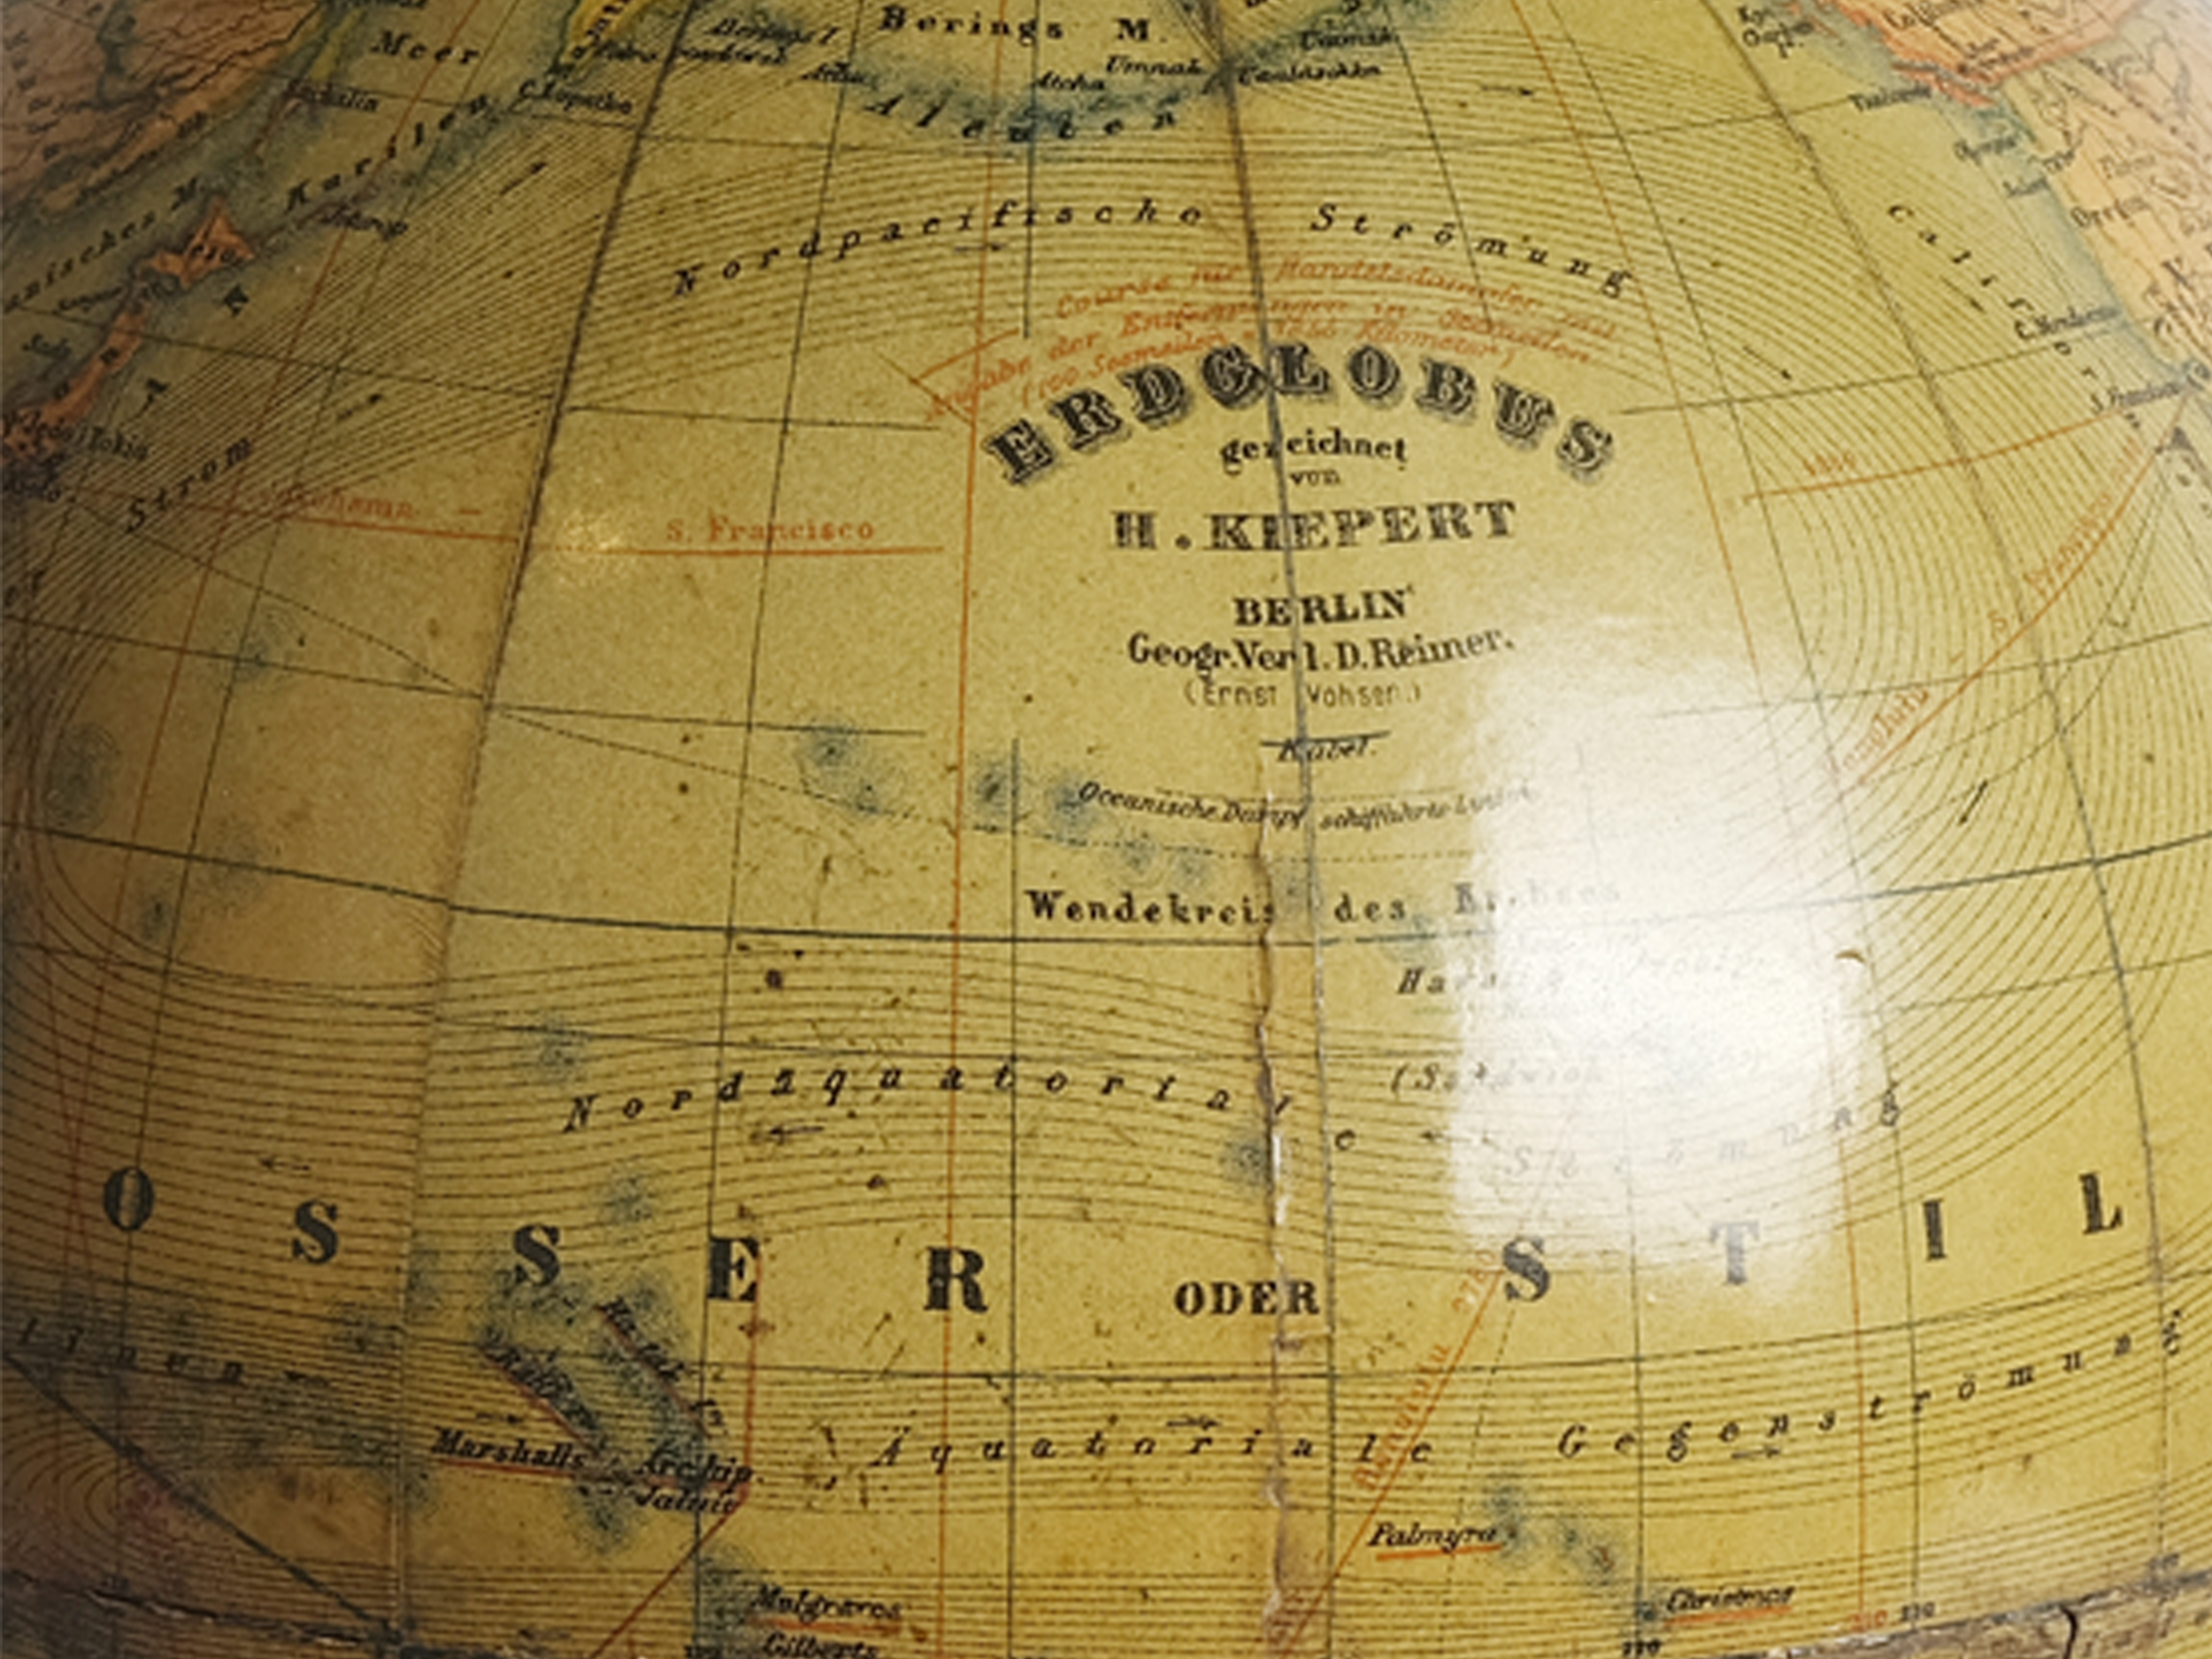 Globe, H. Kiepert Berlin, around 1900 - Image 6 of 6